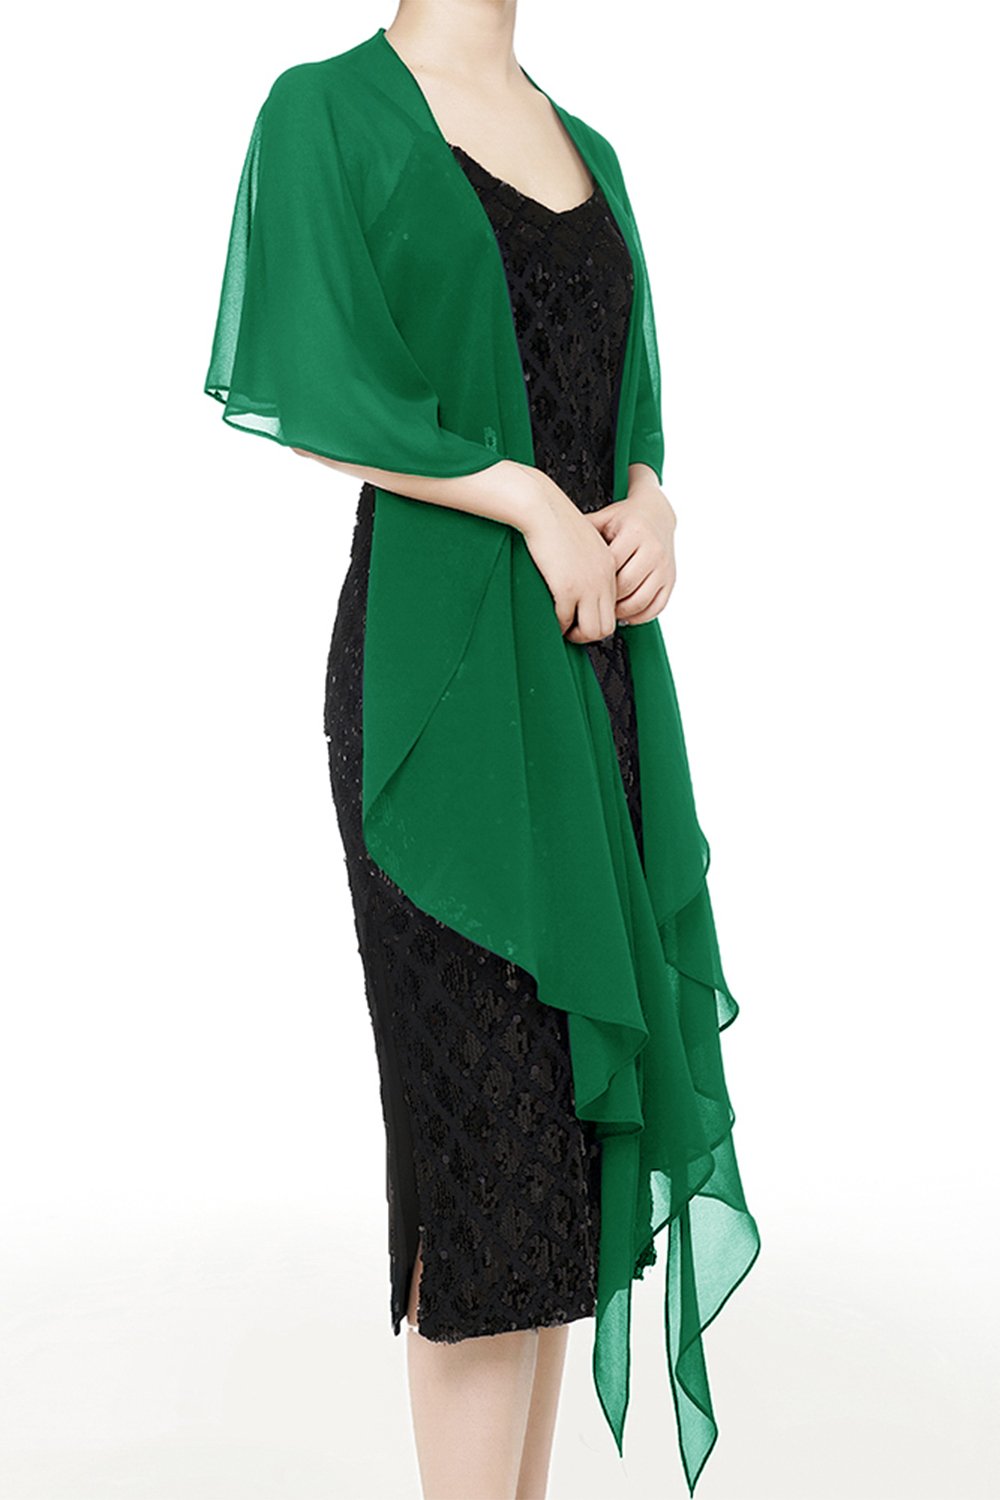 Envolturas de chales de bufanda suave de gasa para vestidos Accesorios para mujeres